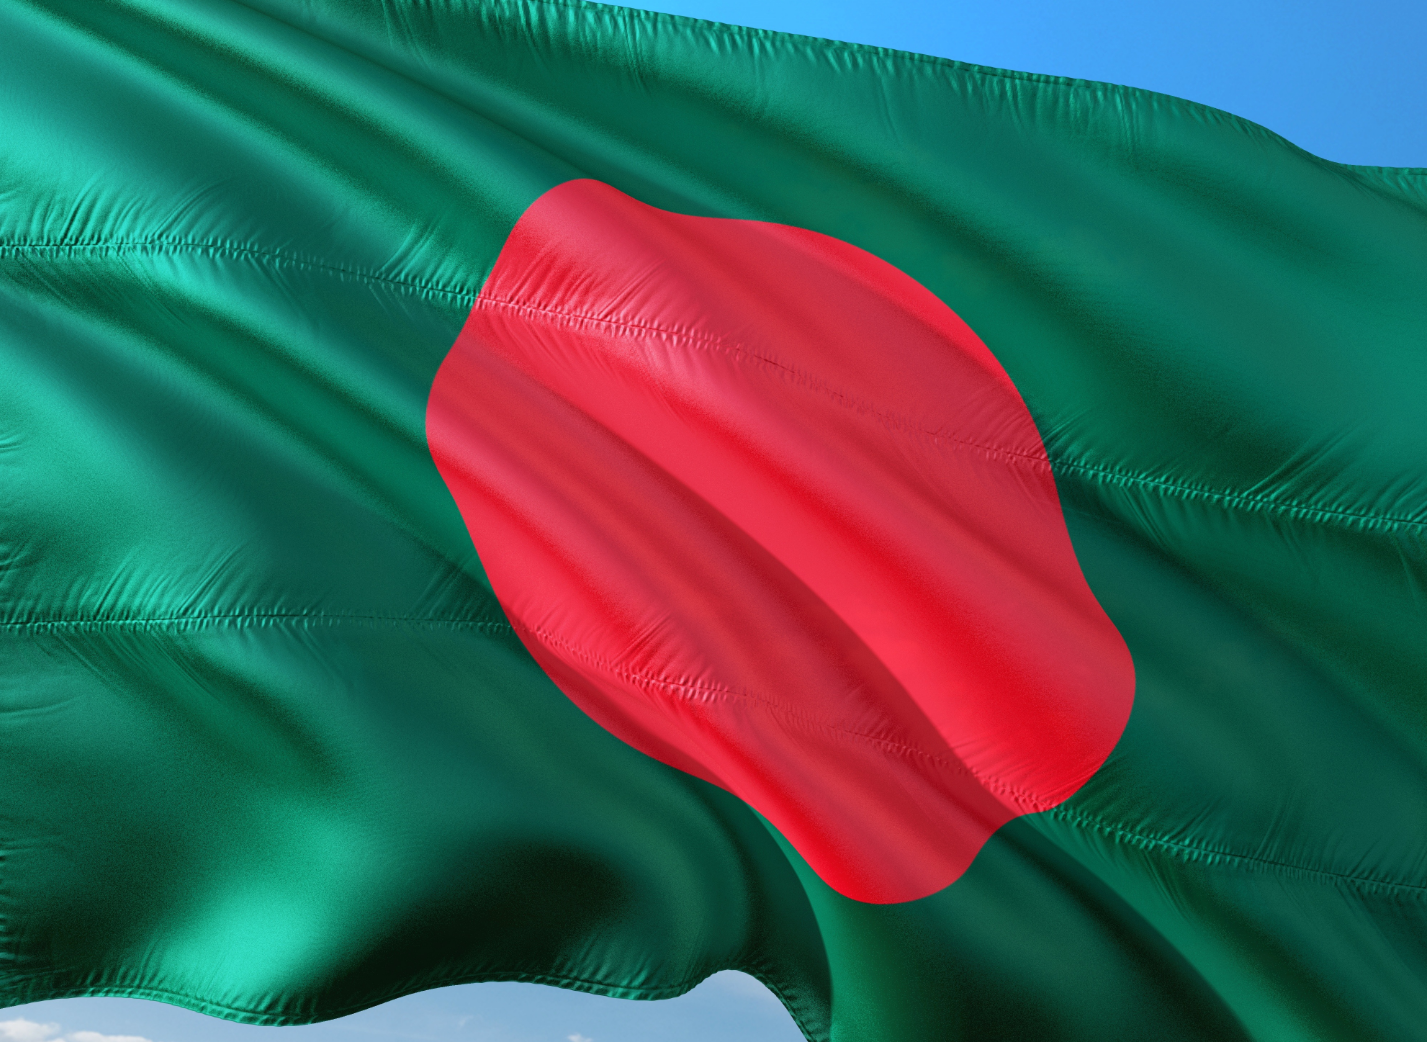 Le Bangladesh emprunte 940 millions de dollars pour le projet COVID-19